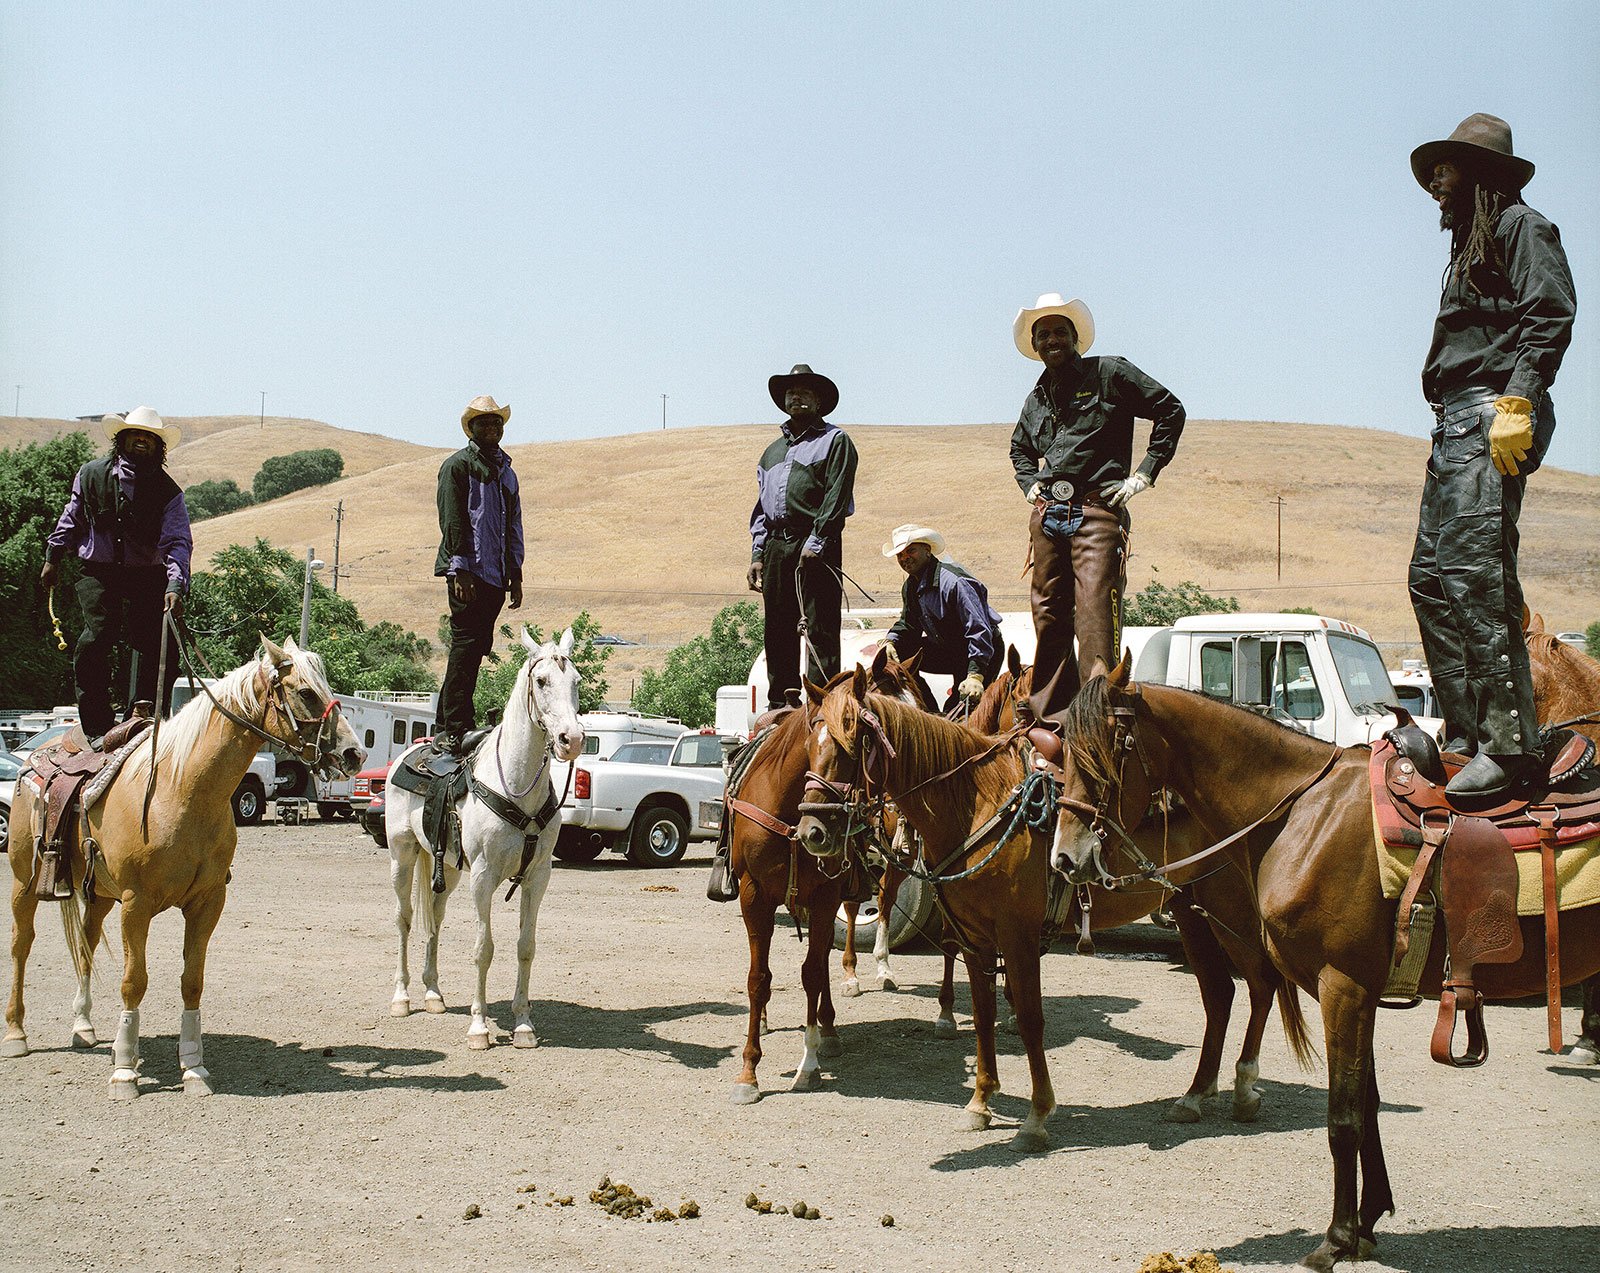 men standing on horseback